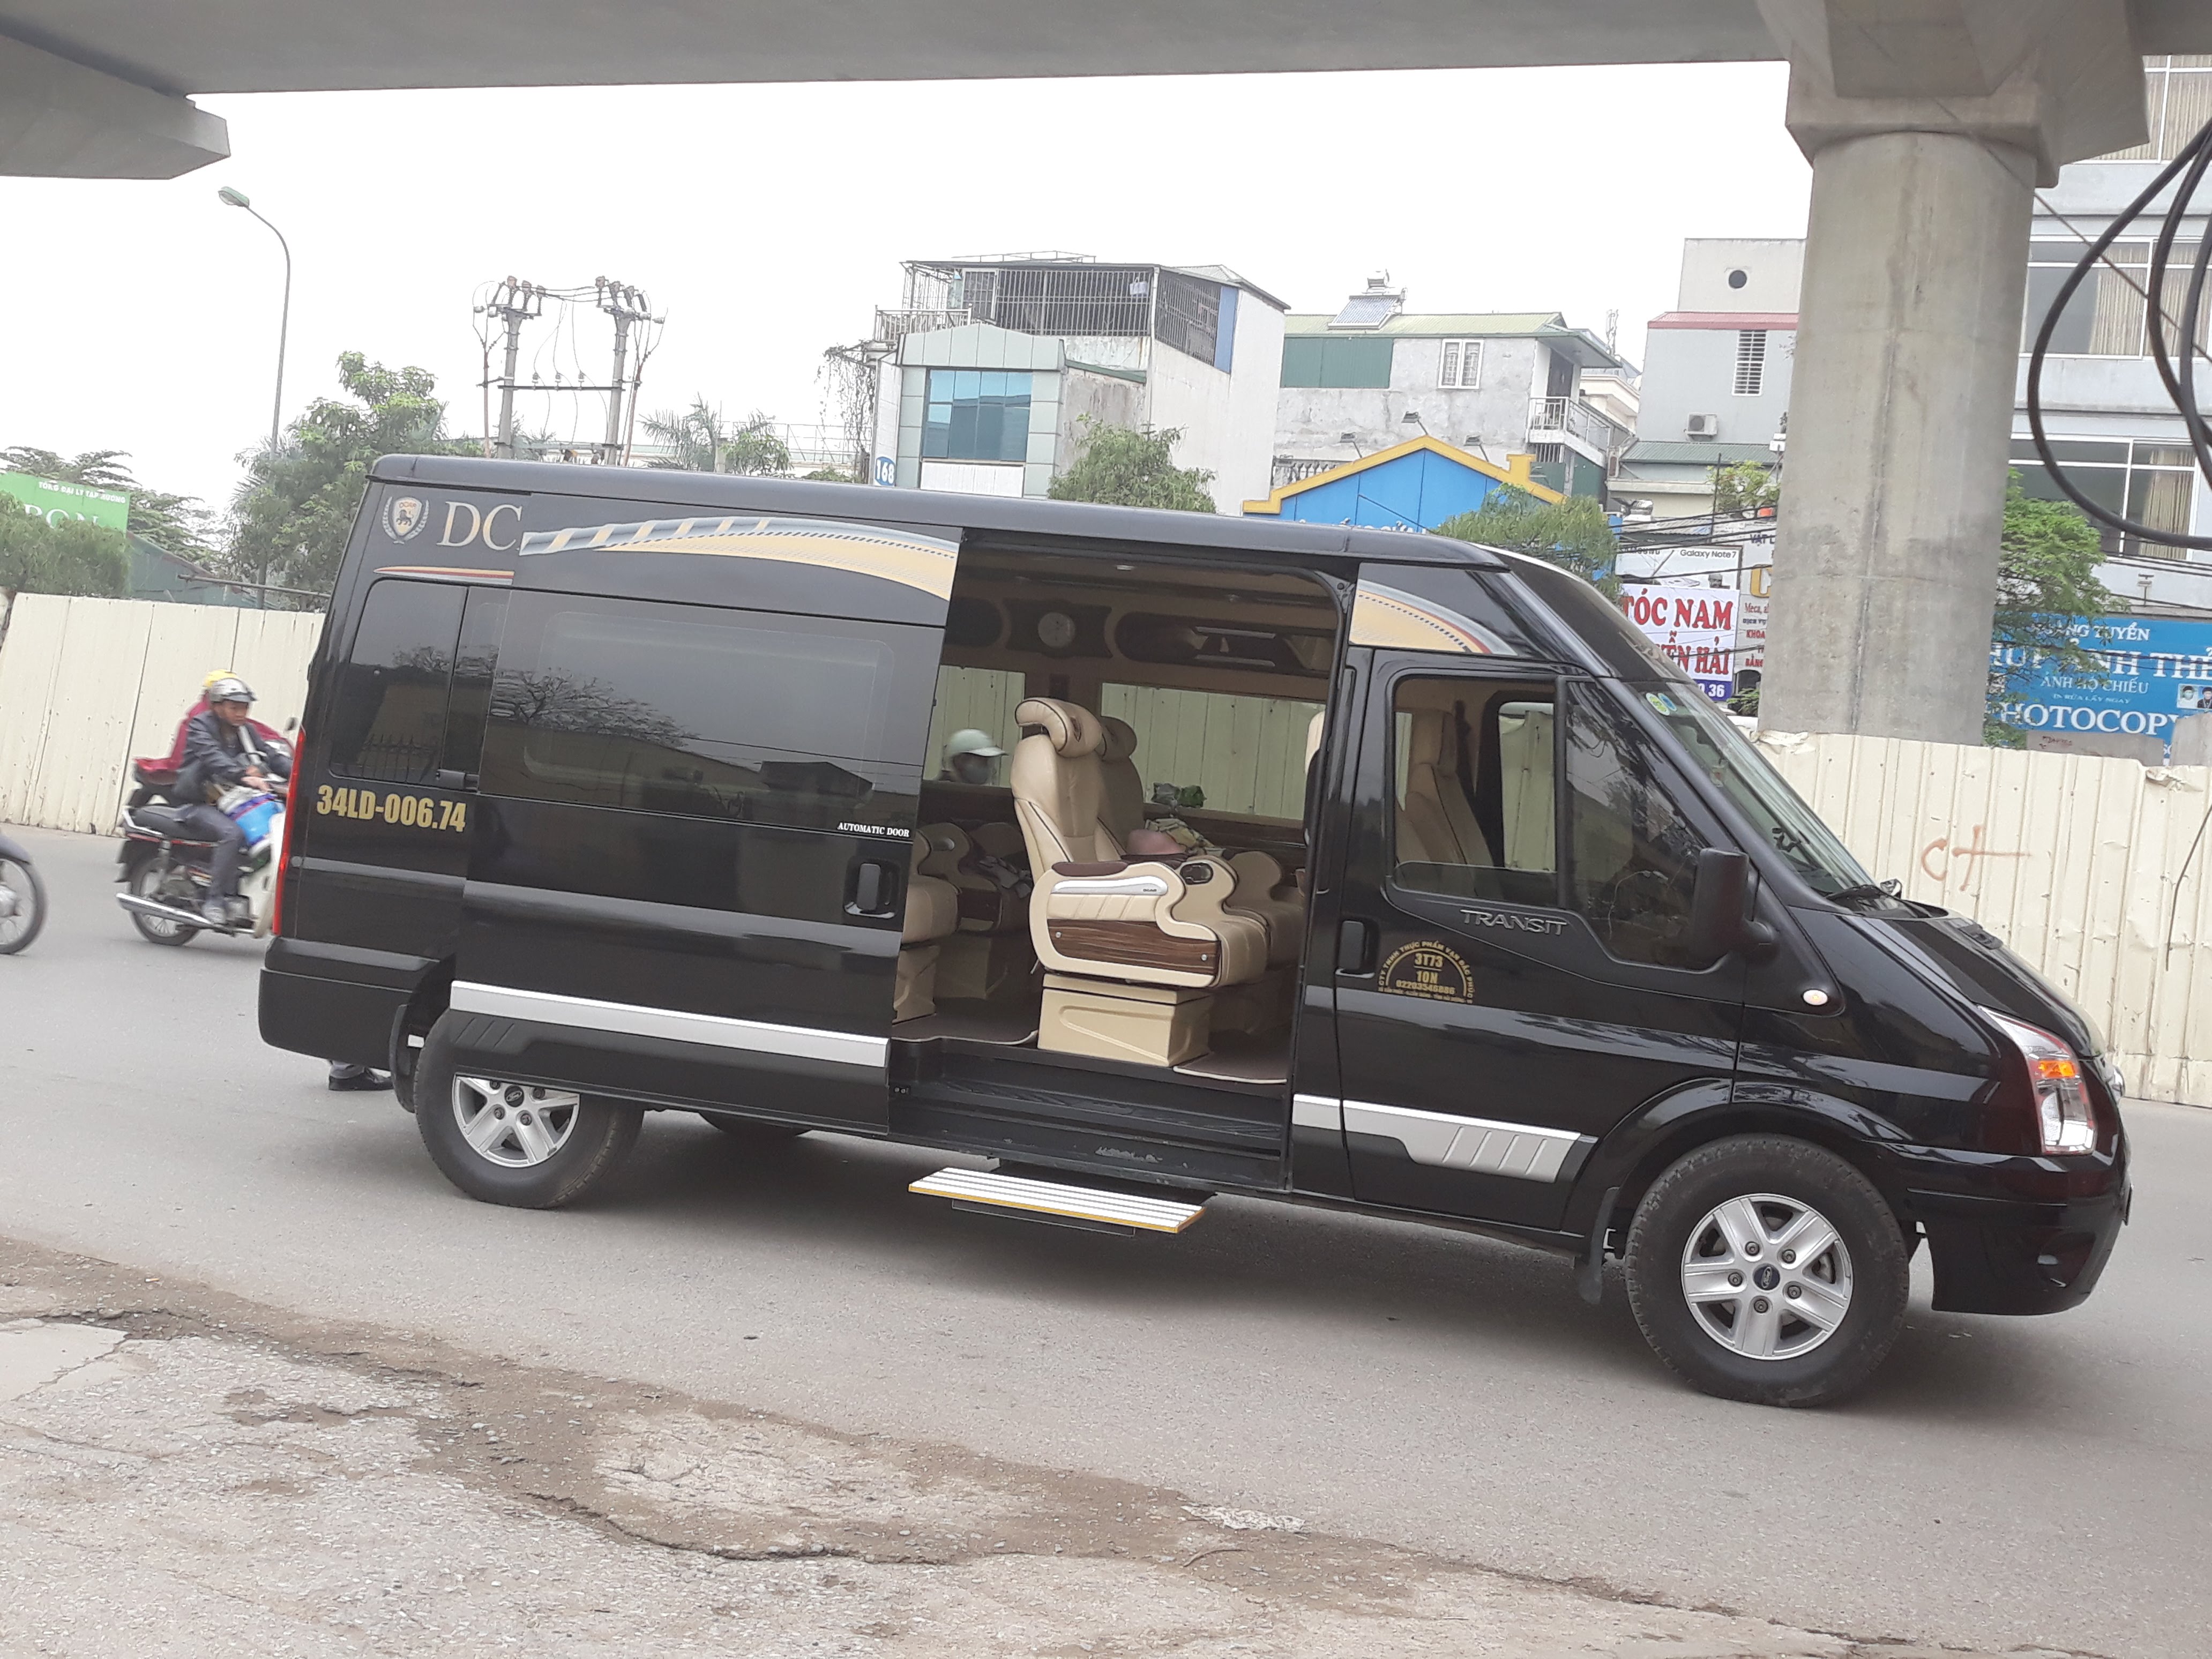 3 Nhà xe limousine Hà Nội Hưng Yên giường nằm đưa đón tận nhà giá rẻ